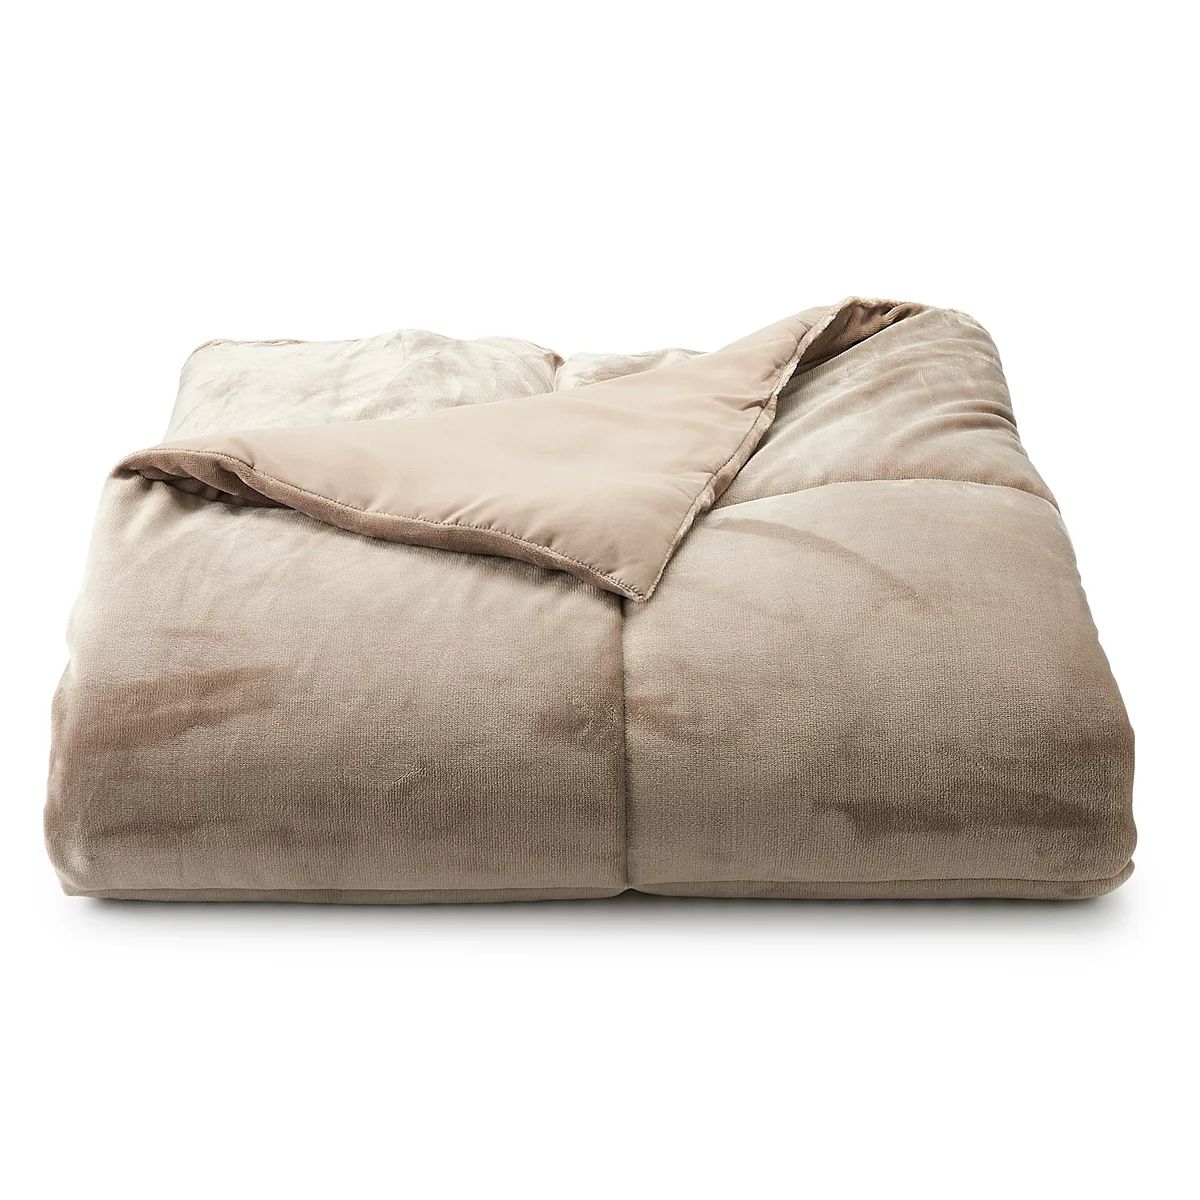 The Big One® Plush Reversible Comforter | Kohl's